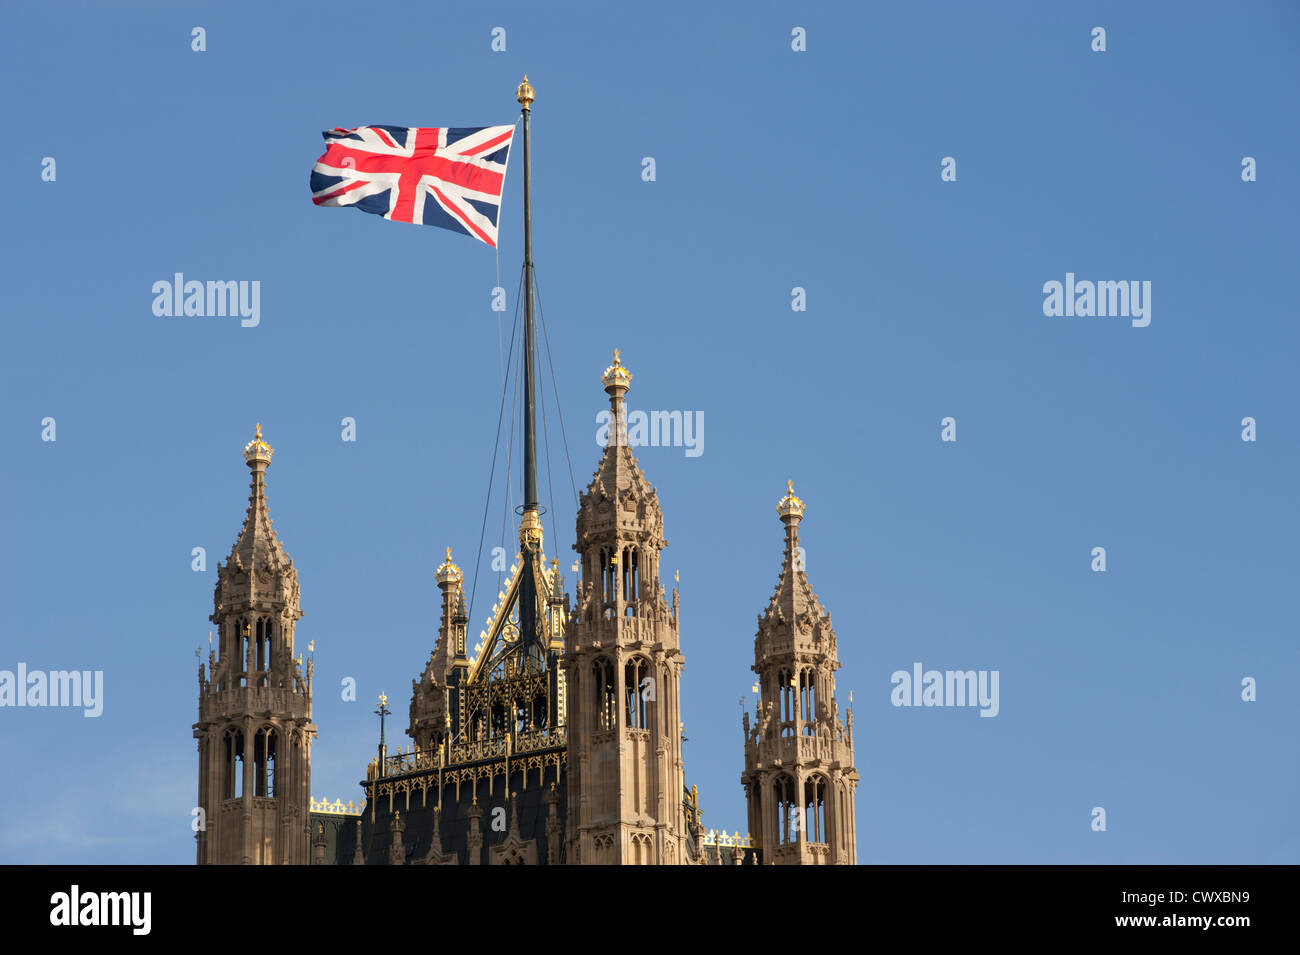 L'Unione di bandiera o di 'Unione Jack' sollevata sopra il Victoria torre presso il Palazzo di Westminster a Londra, Inghilterra, Regno Unito. Foto Stock